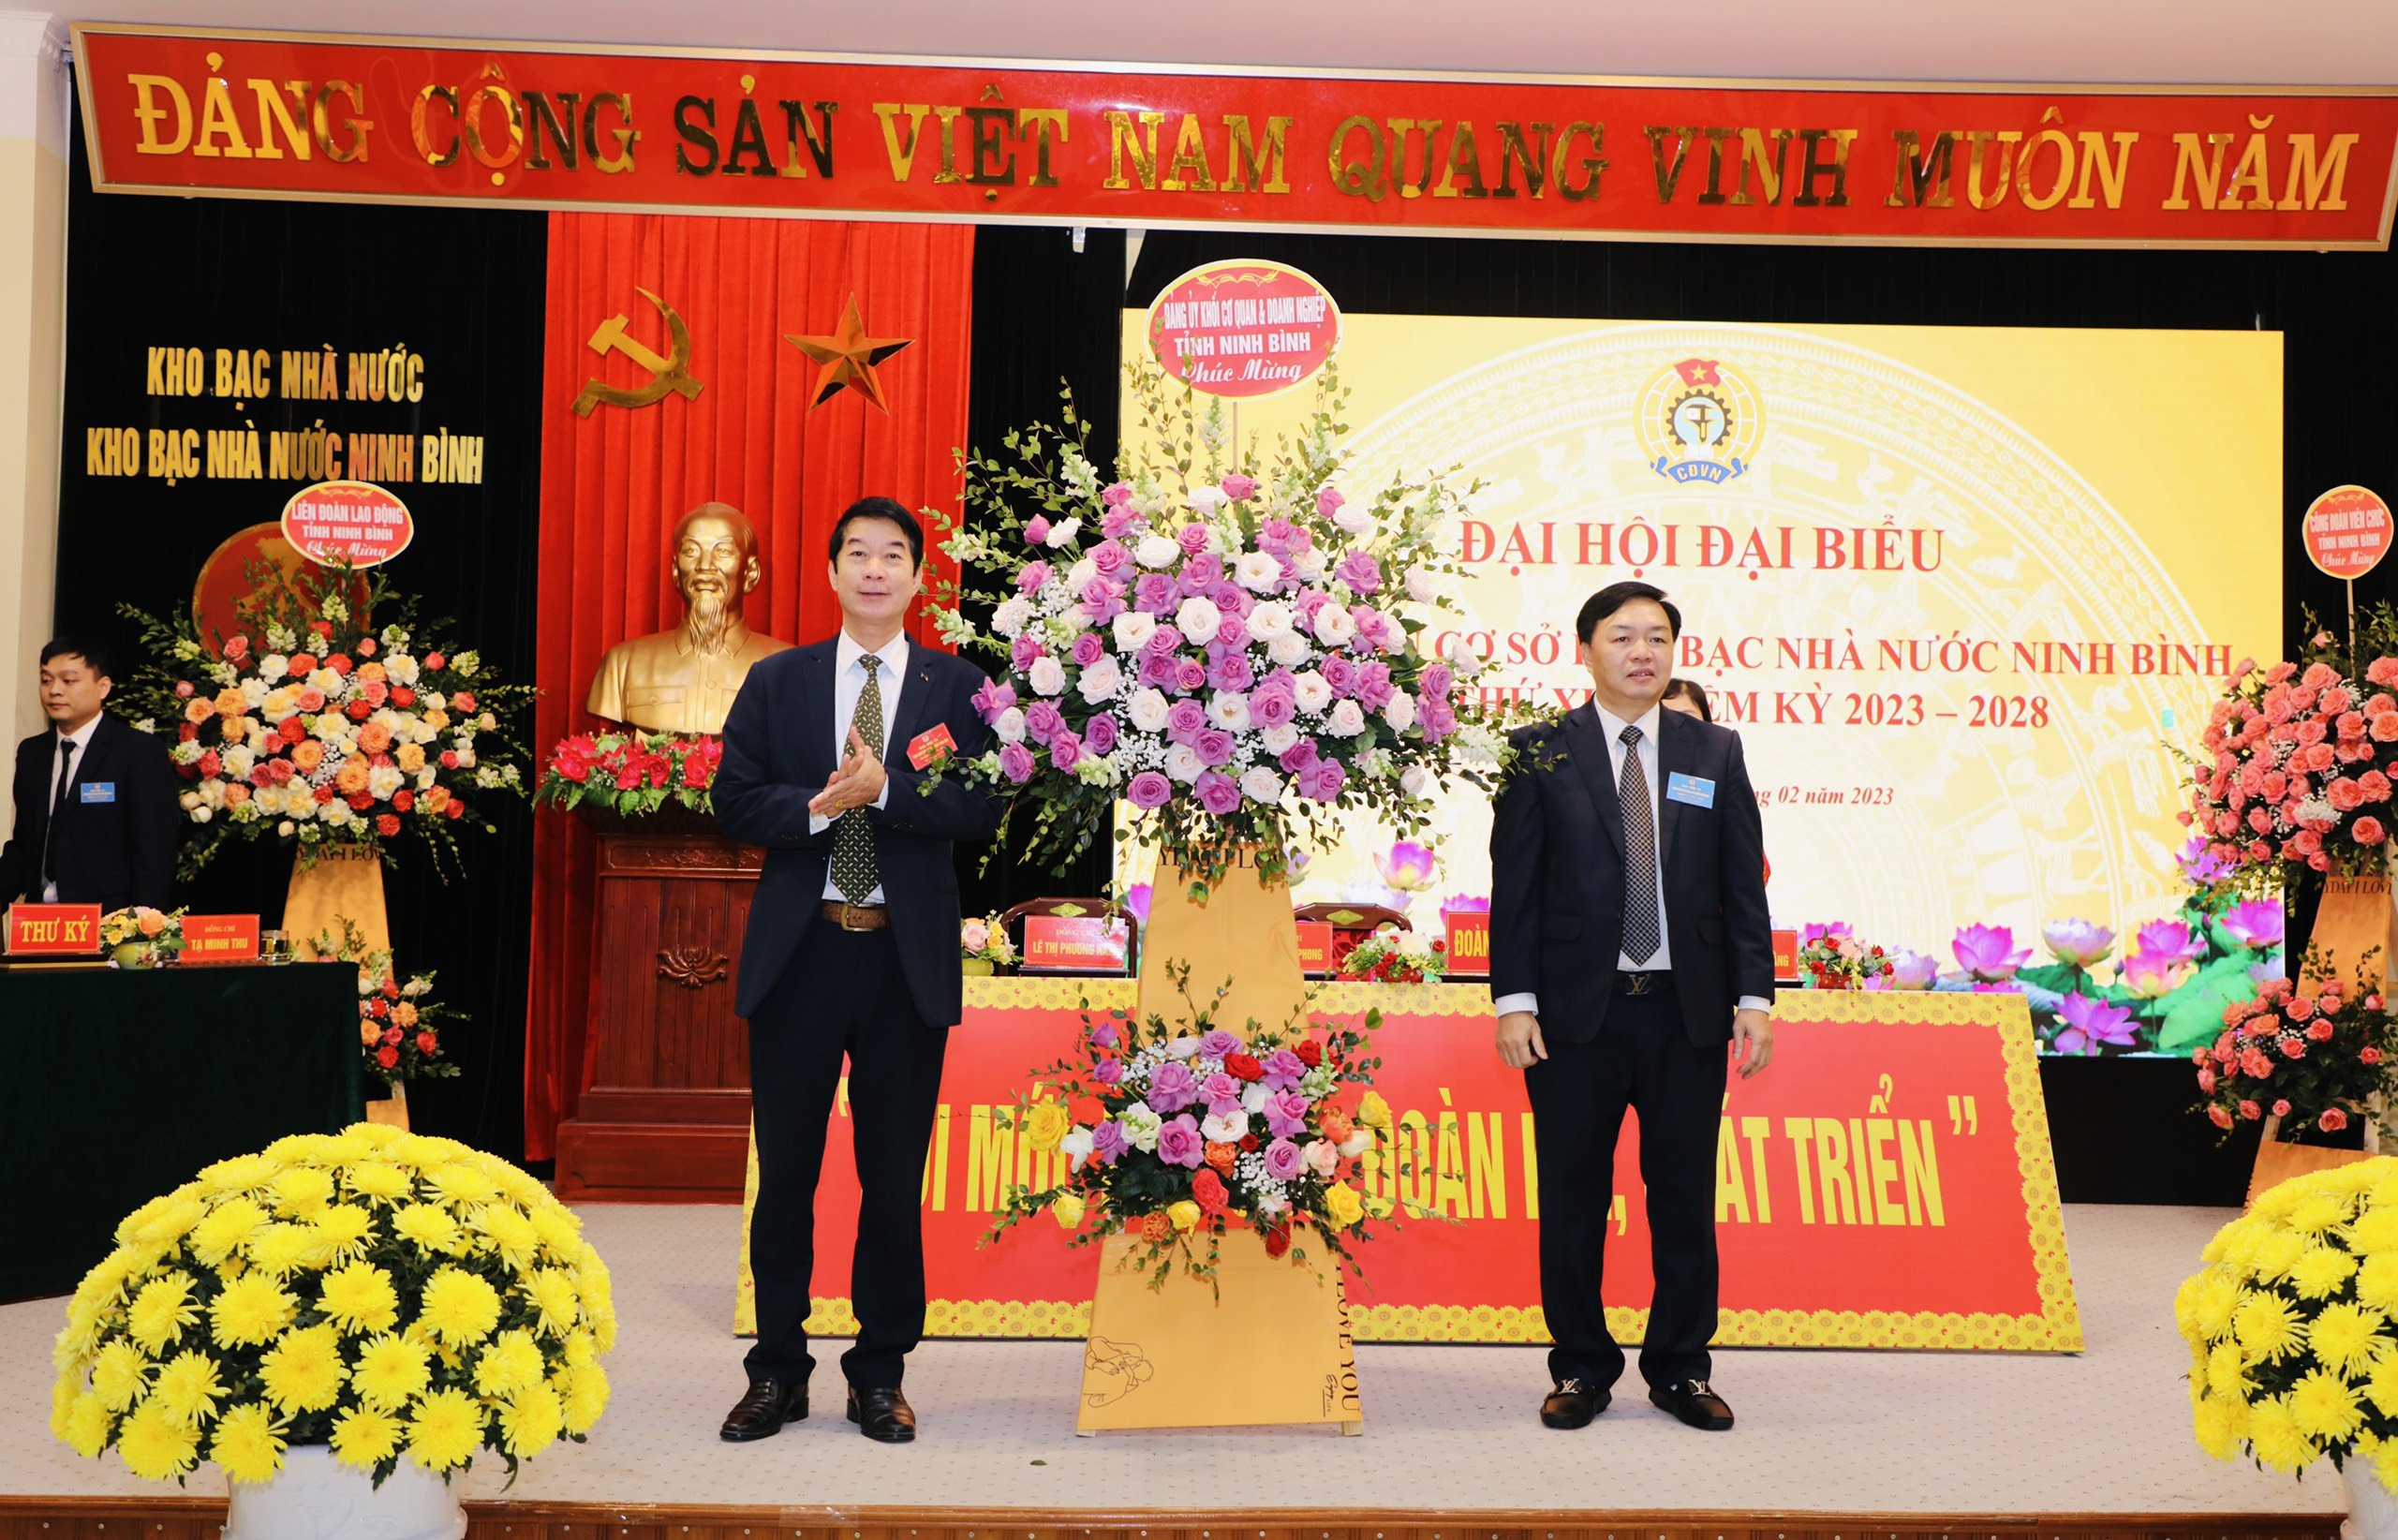 Công đoàn Viên chức tỉnh chỉ đạo Đại hội điểm nhiệm kỳ 2023-2028 tại CĐCS Kho bạc Nhà nước Ninh Bình